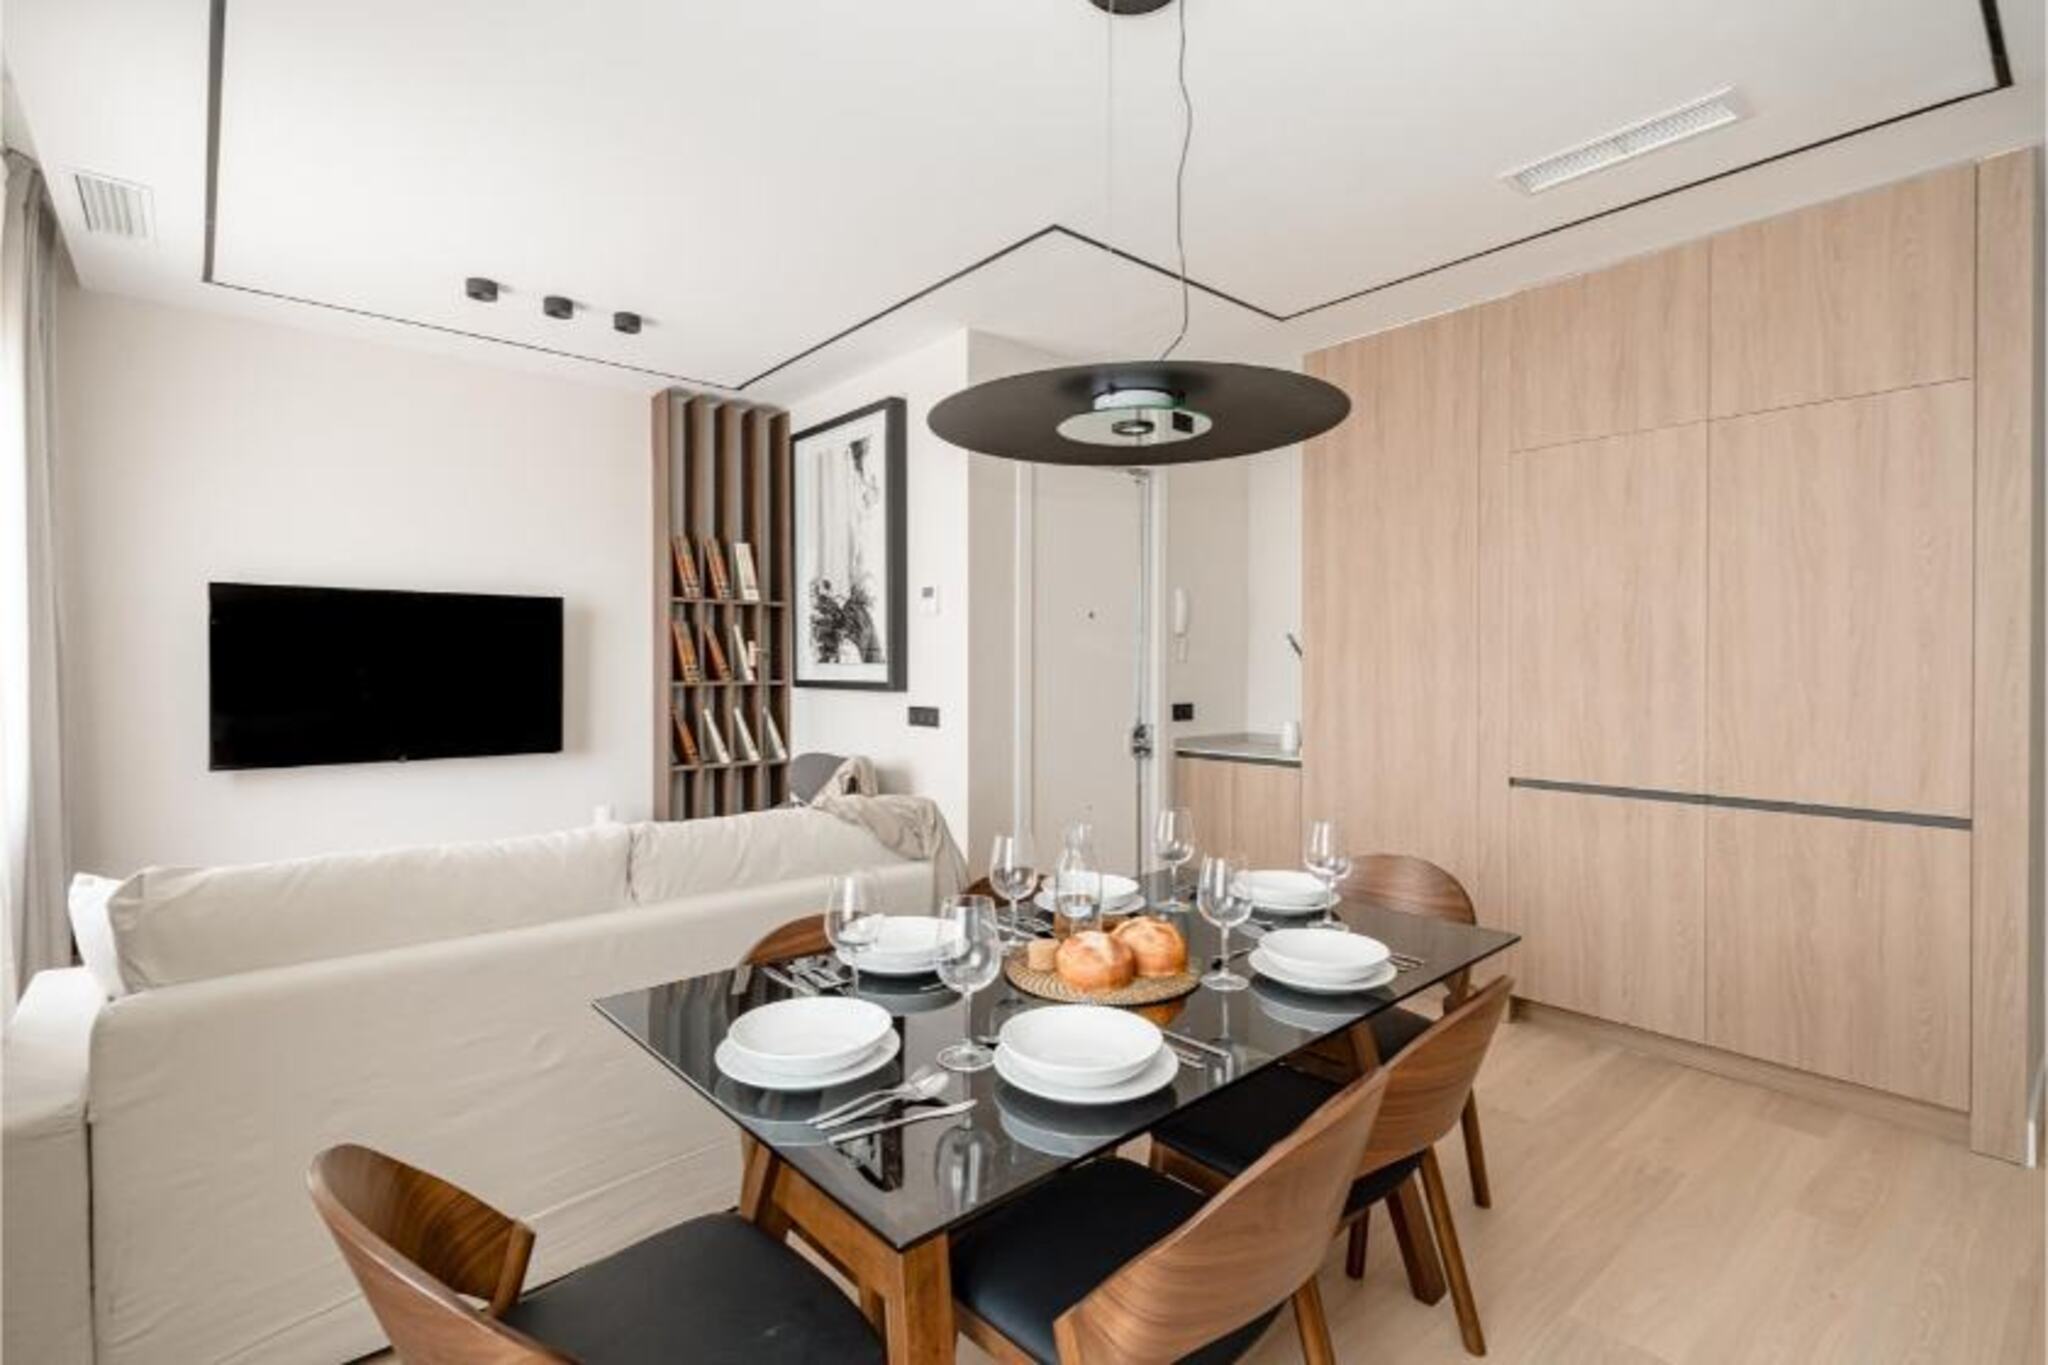 Salamanca Apartment: Design and Comfor